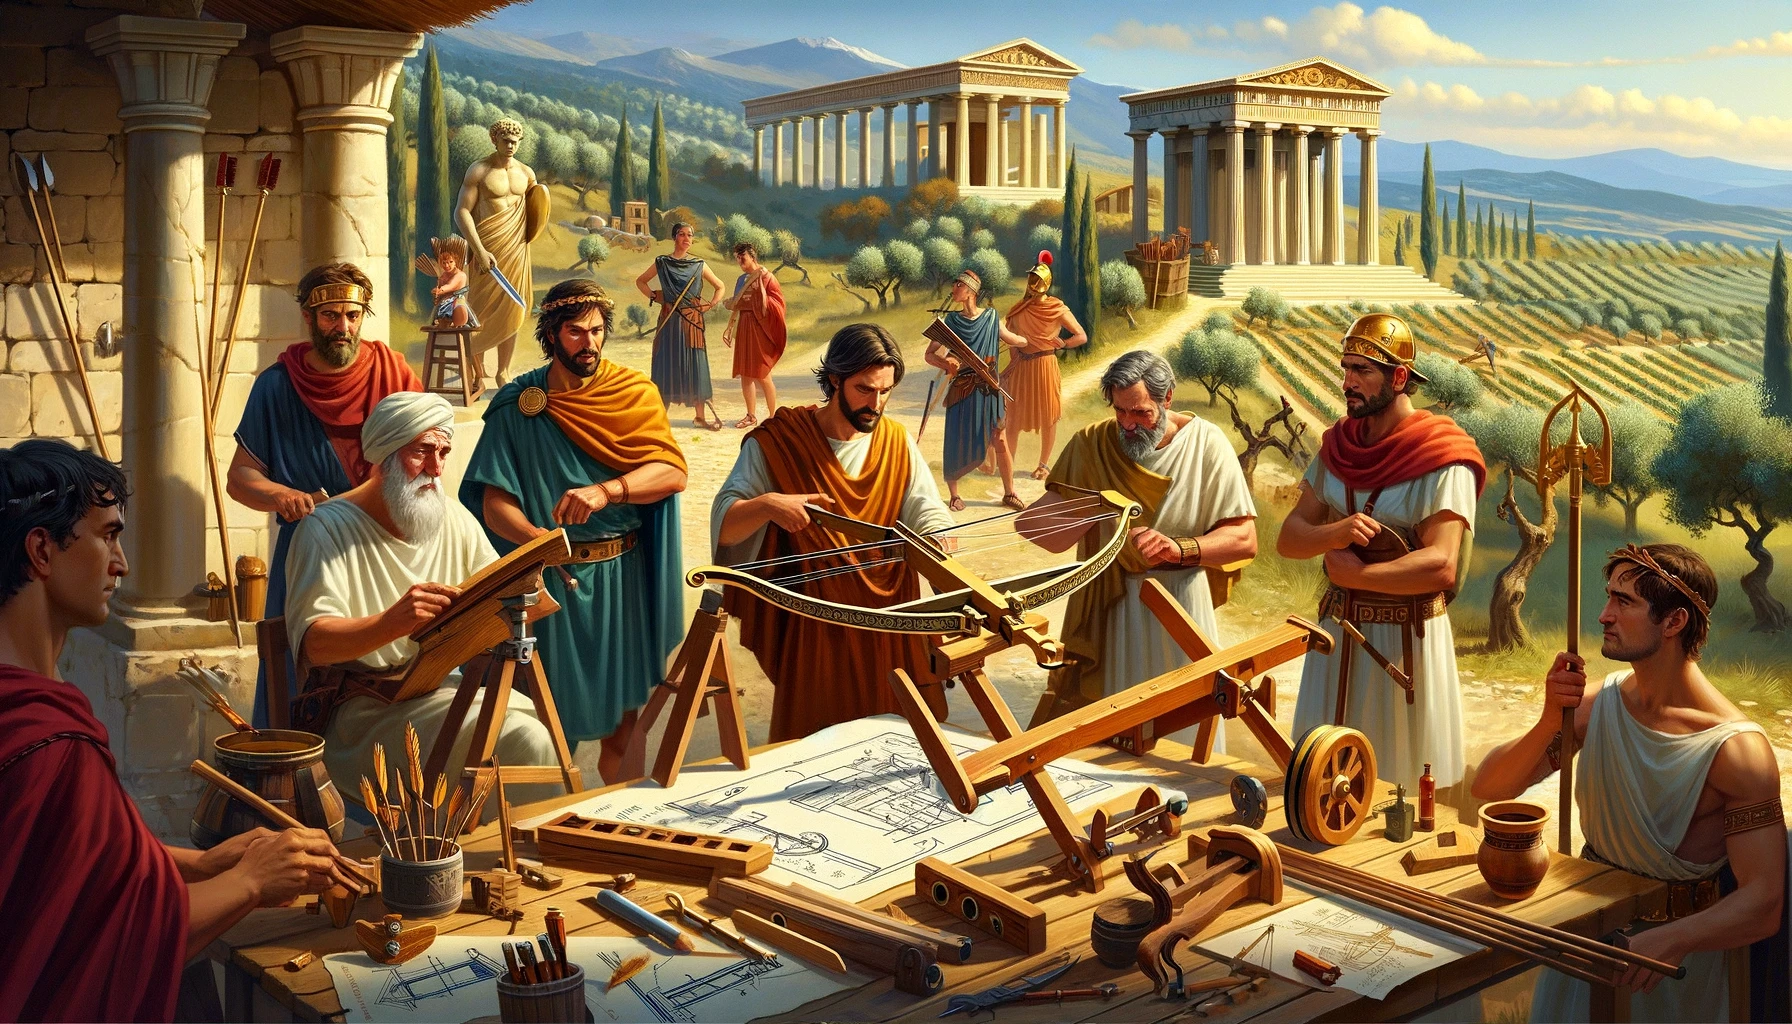 Ingénieurs et guerriers grecs et romains collaborant sur le développement d'une arbalète, dans un atelier en plein air avec architecture classique